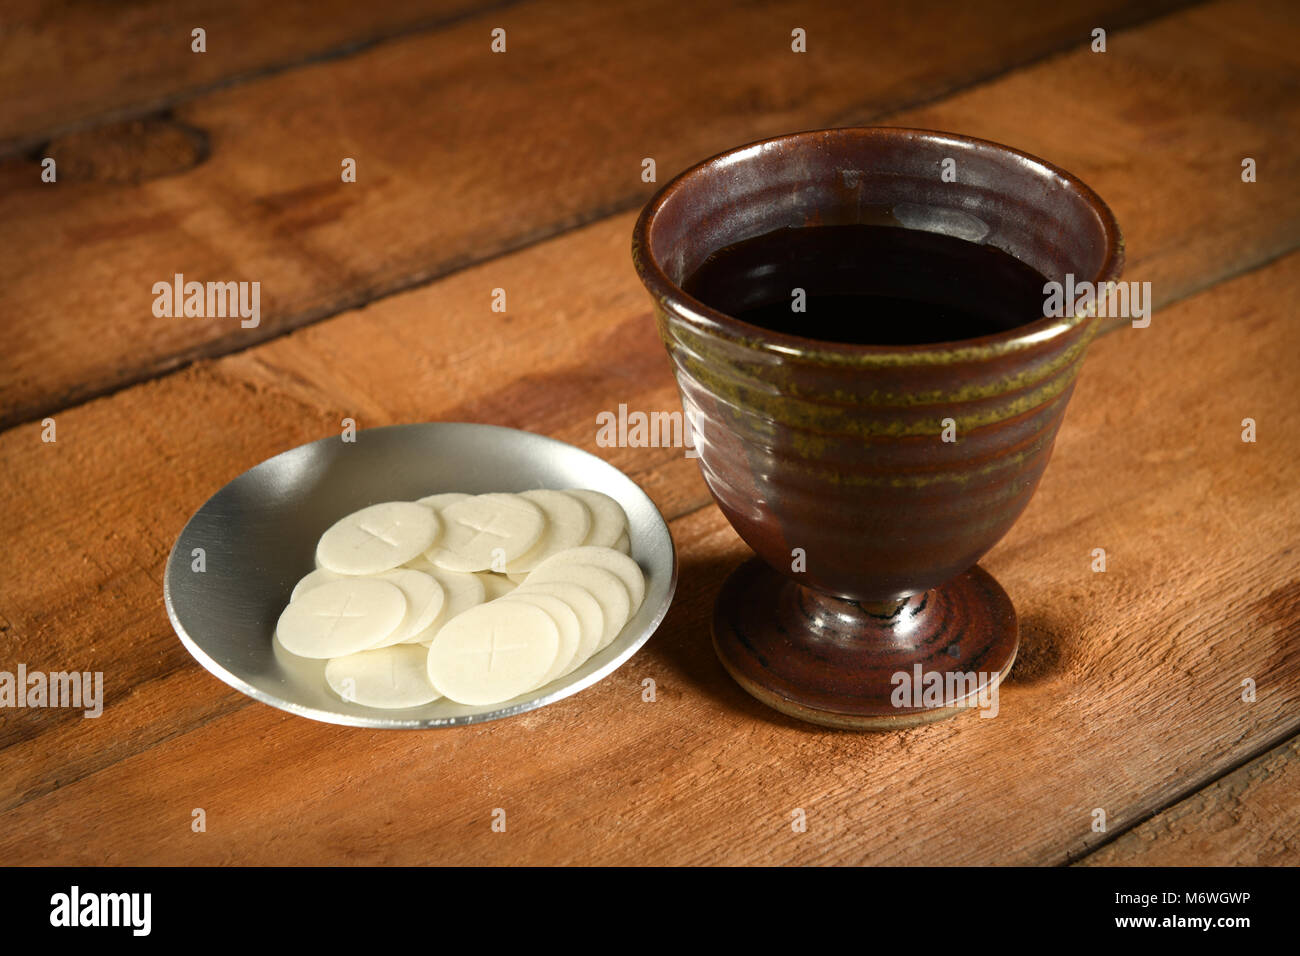 Kommunion-Wafer und Becher Wein auf Holztisch Stockfoto